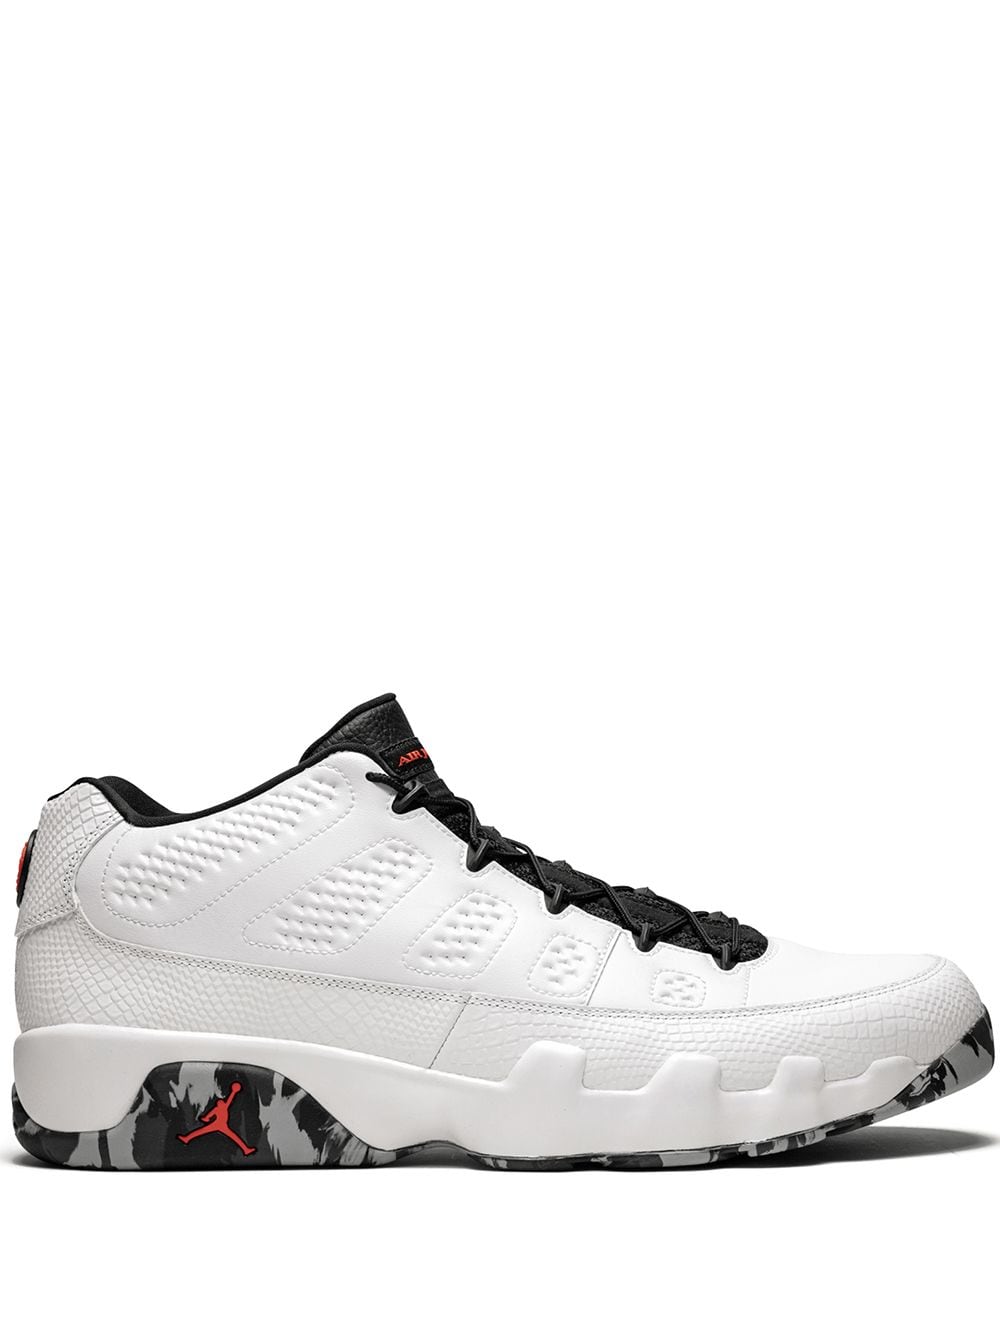 Jordan Air Jordan 9 Retro Low "Jordan Brand Classic" sneakers - White